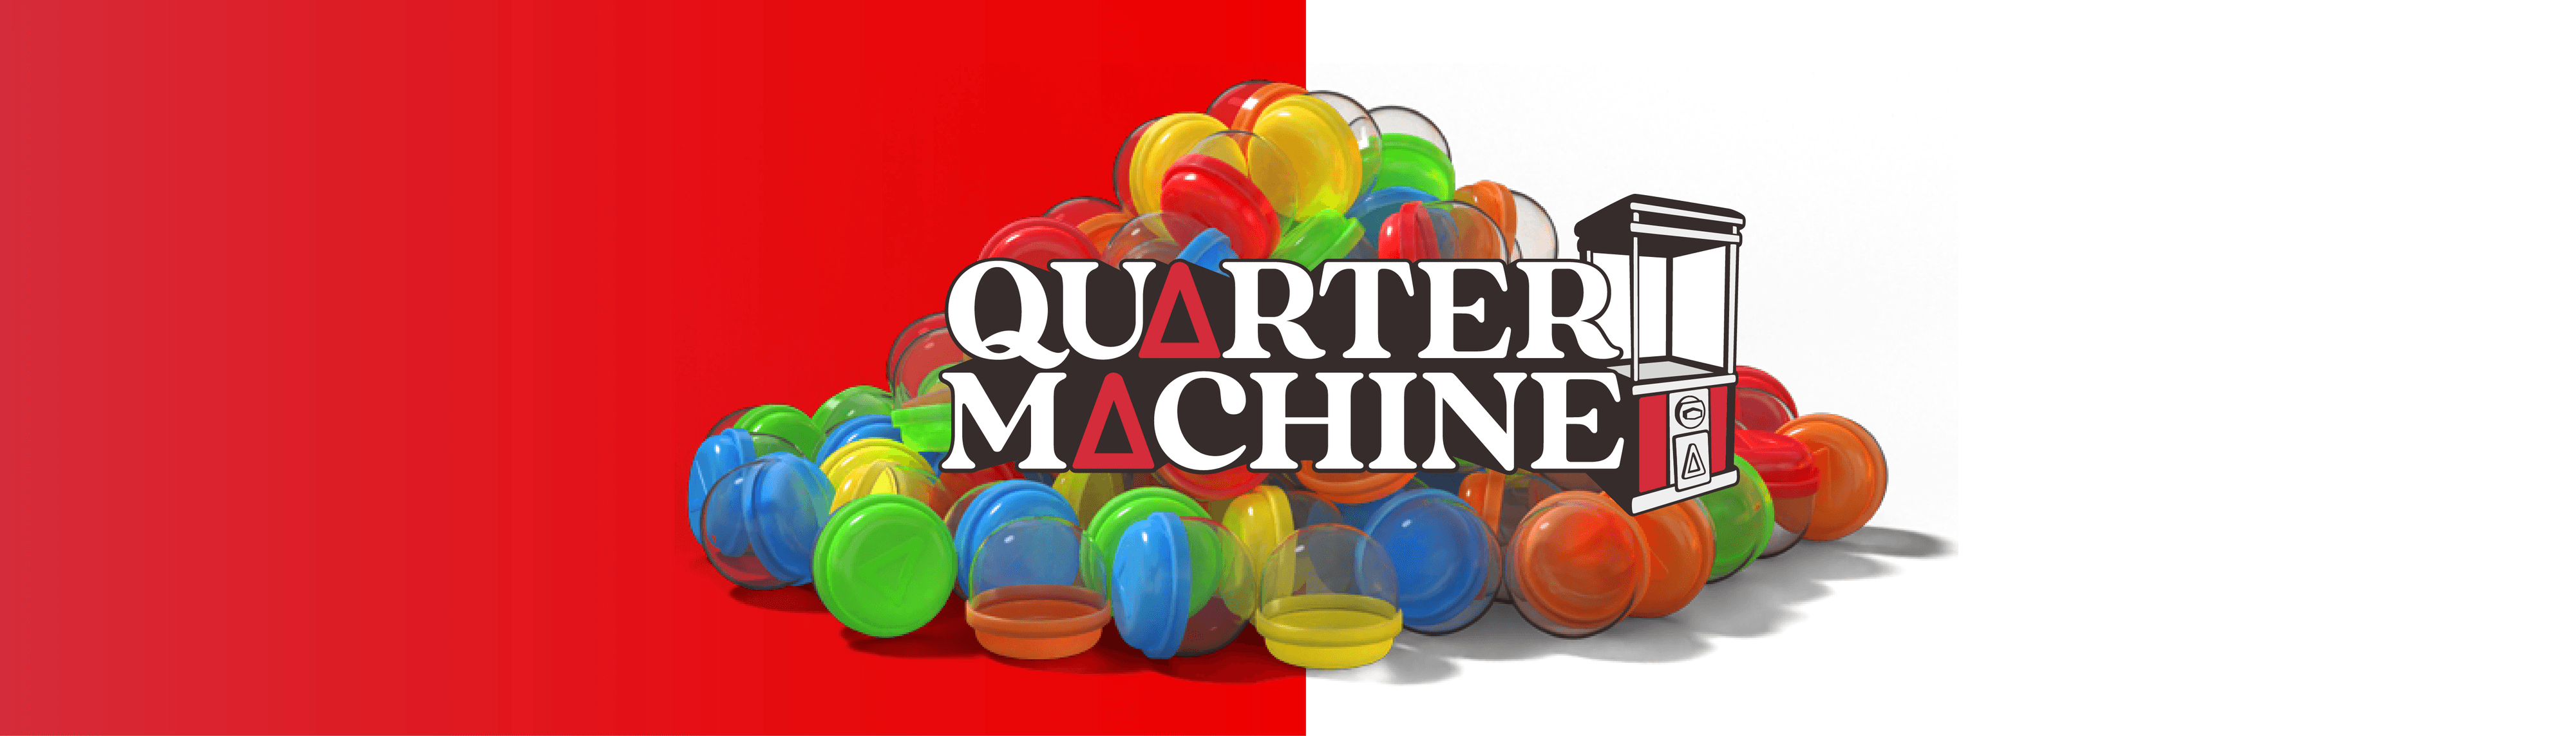 Quartermachine Banner